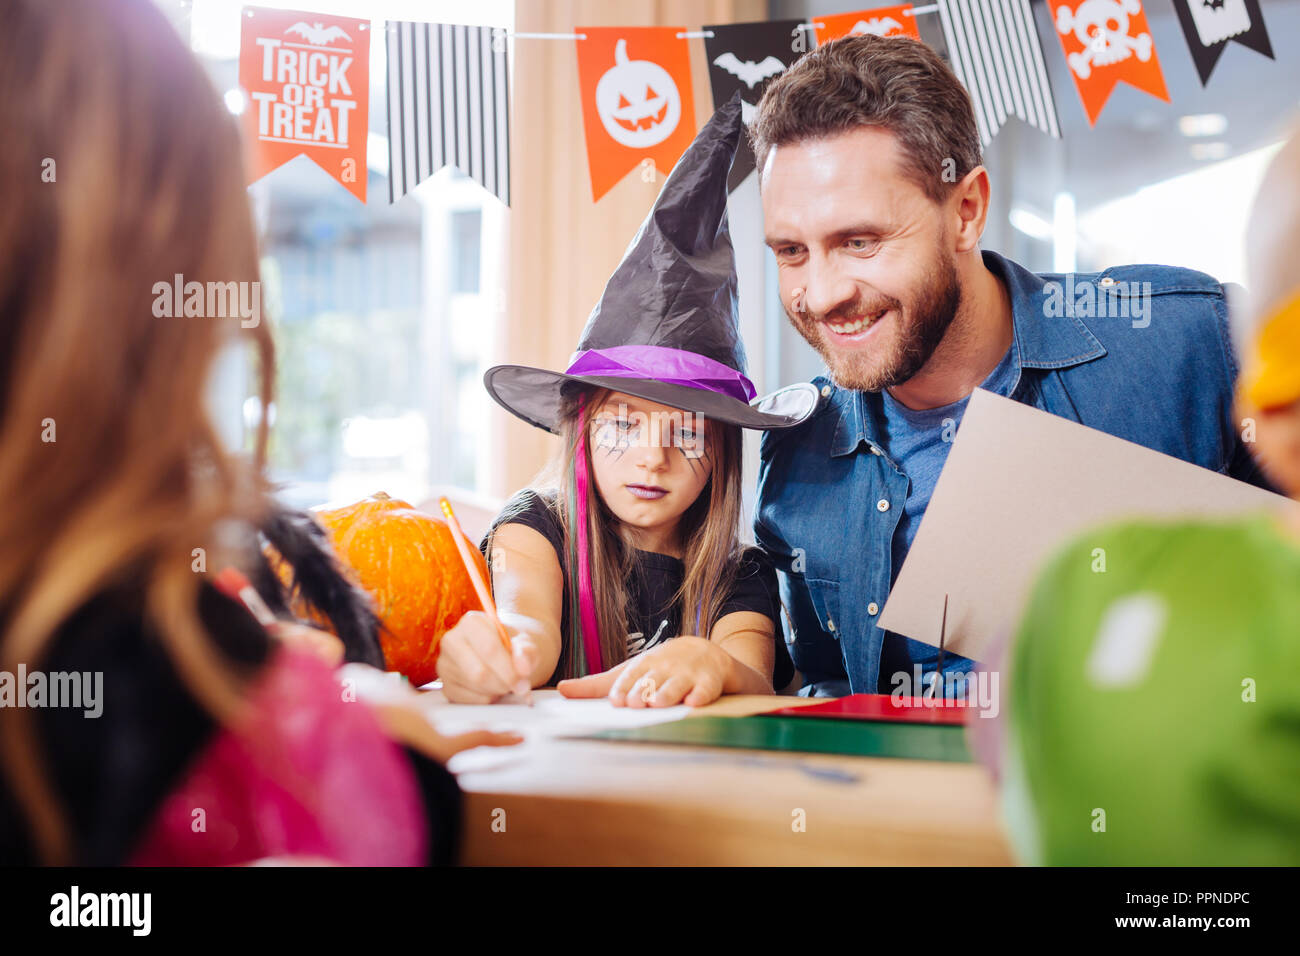 Beau père aimant se joindre à ses enfants Halloween dessin photos Banque D'Images